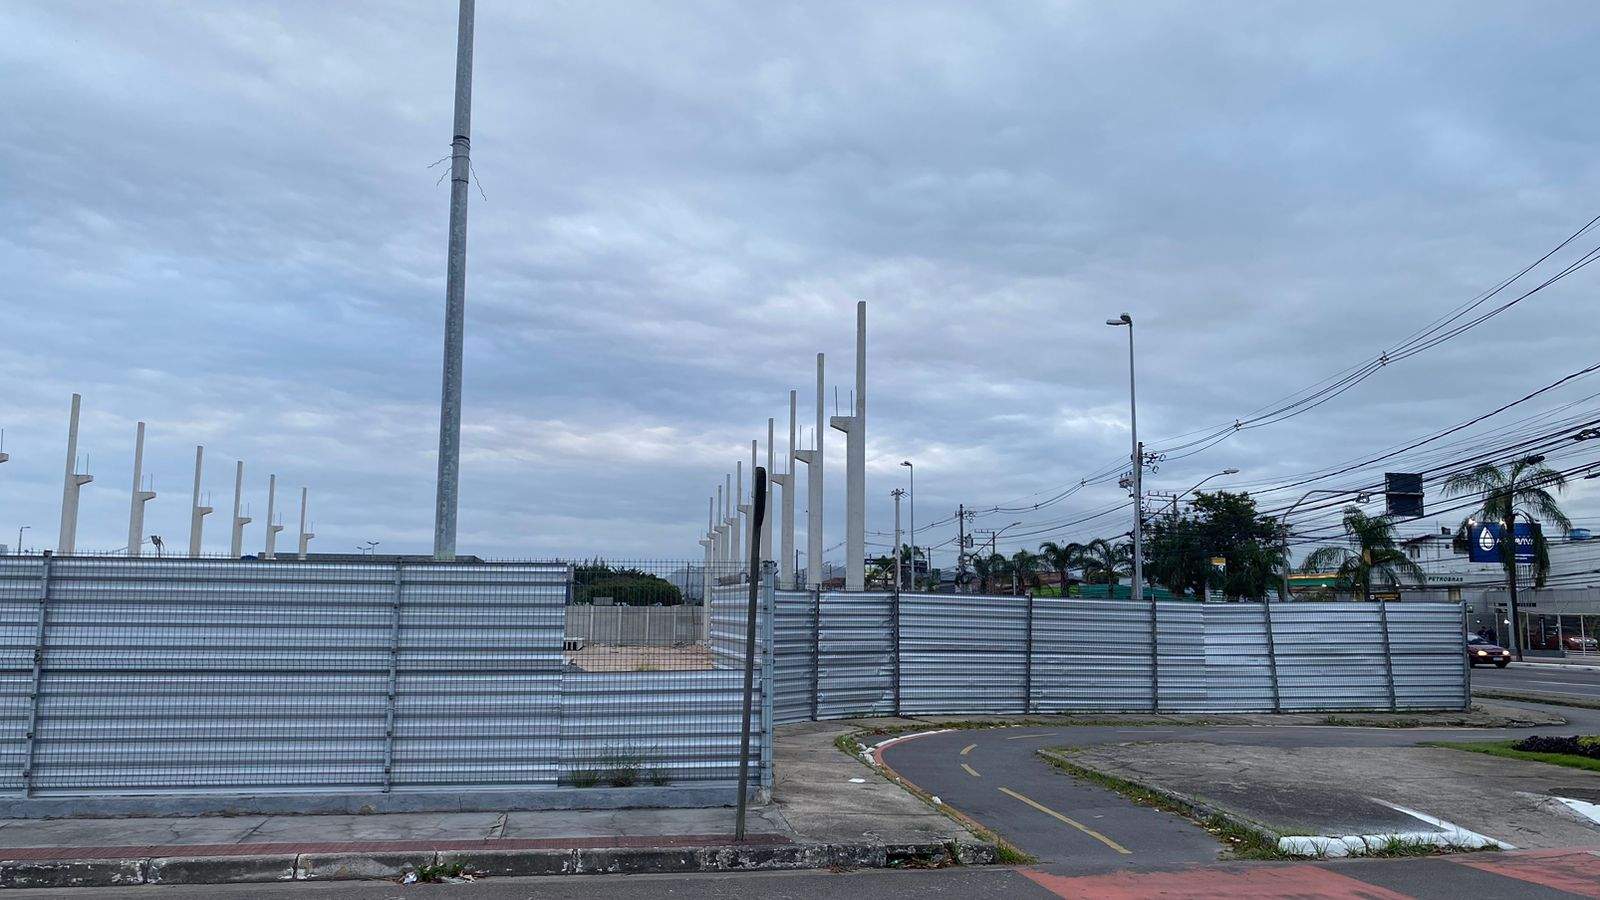 Nova Igreja Evangélica Surgirá em Terreno do Aeroporto de Vitória: Projeto de Construção Iniciado.